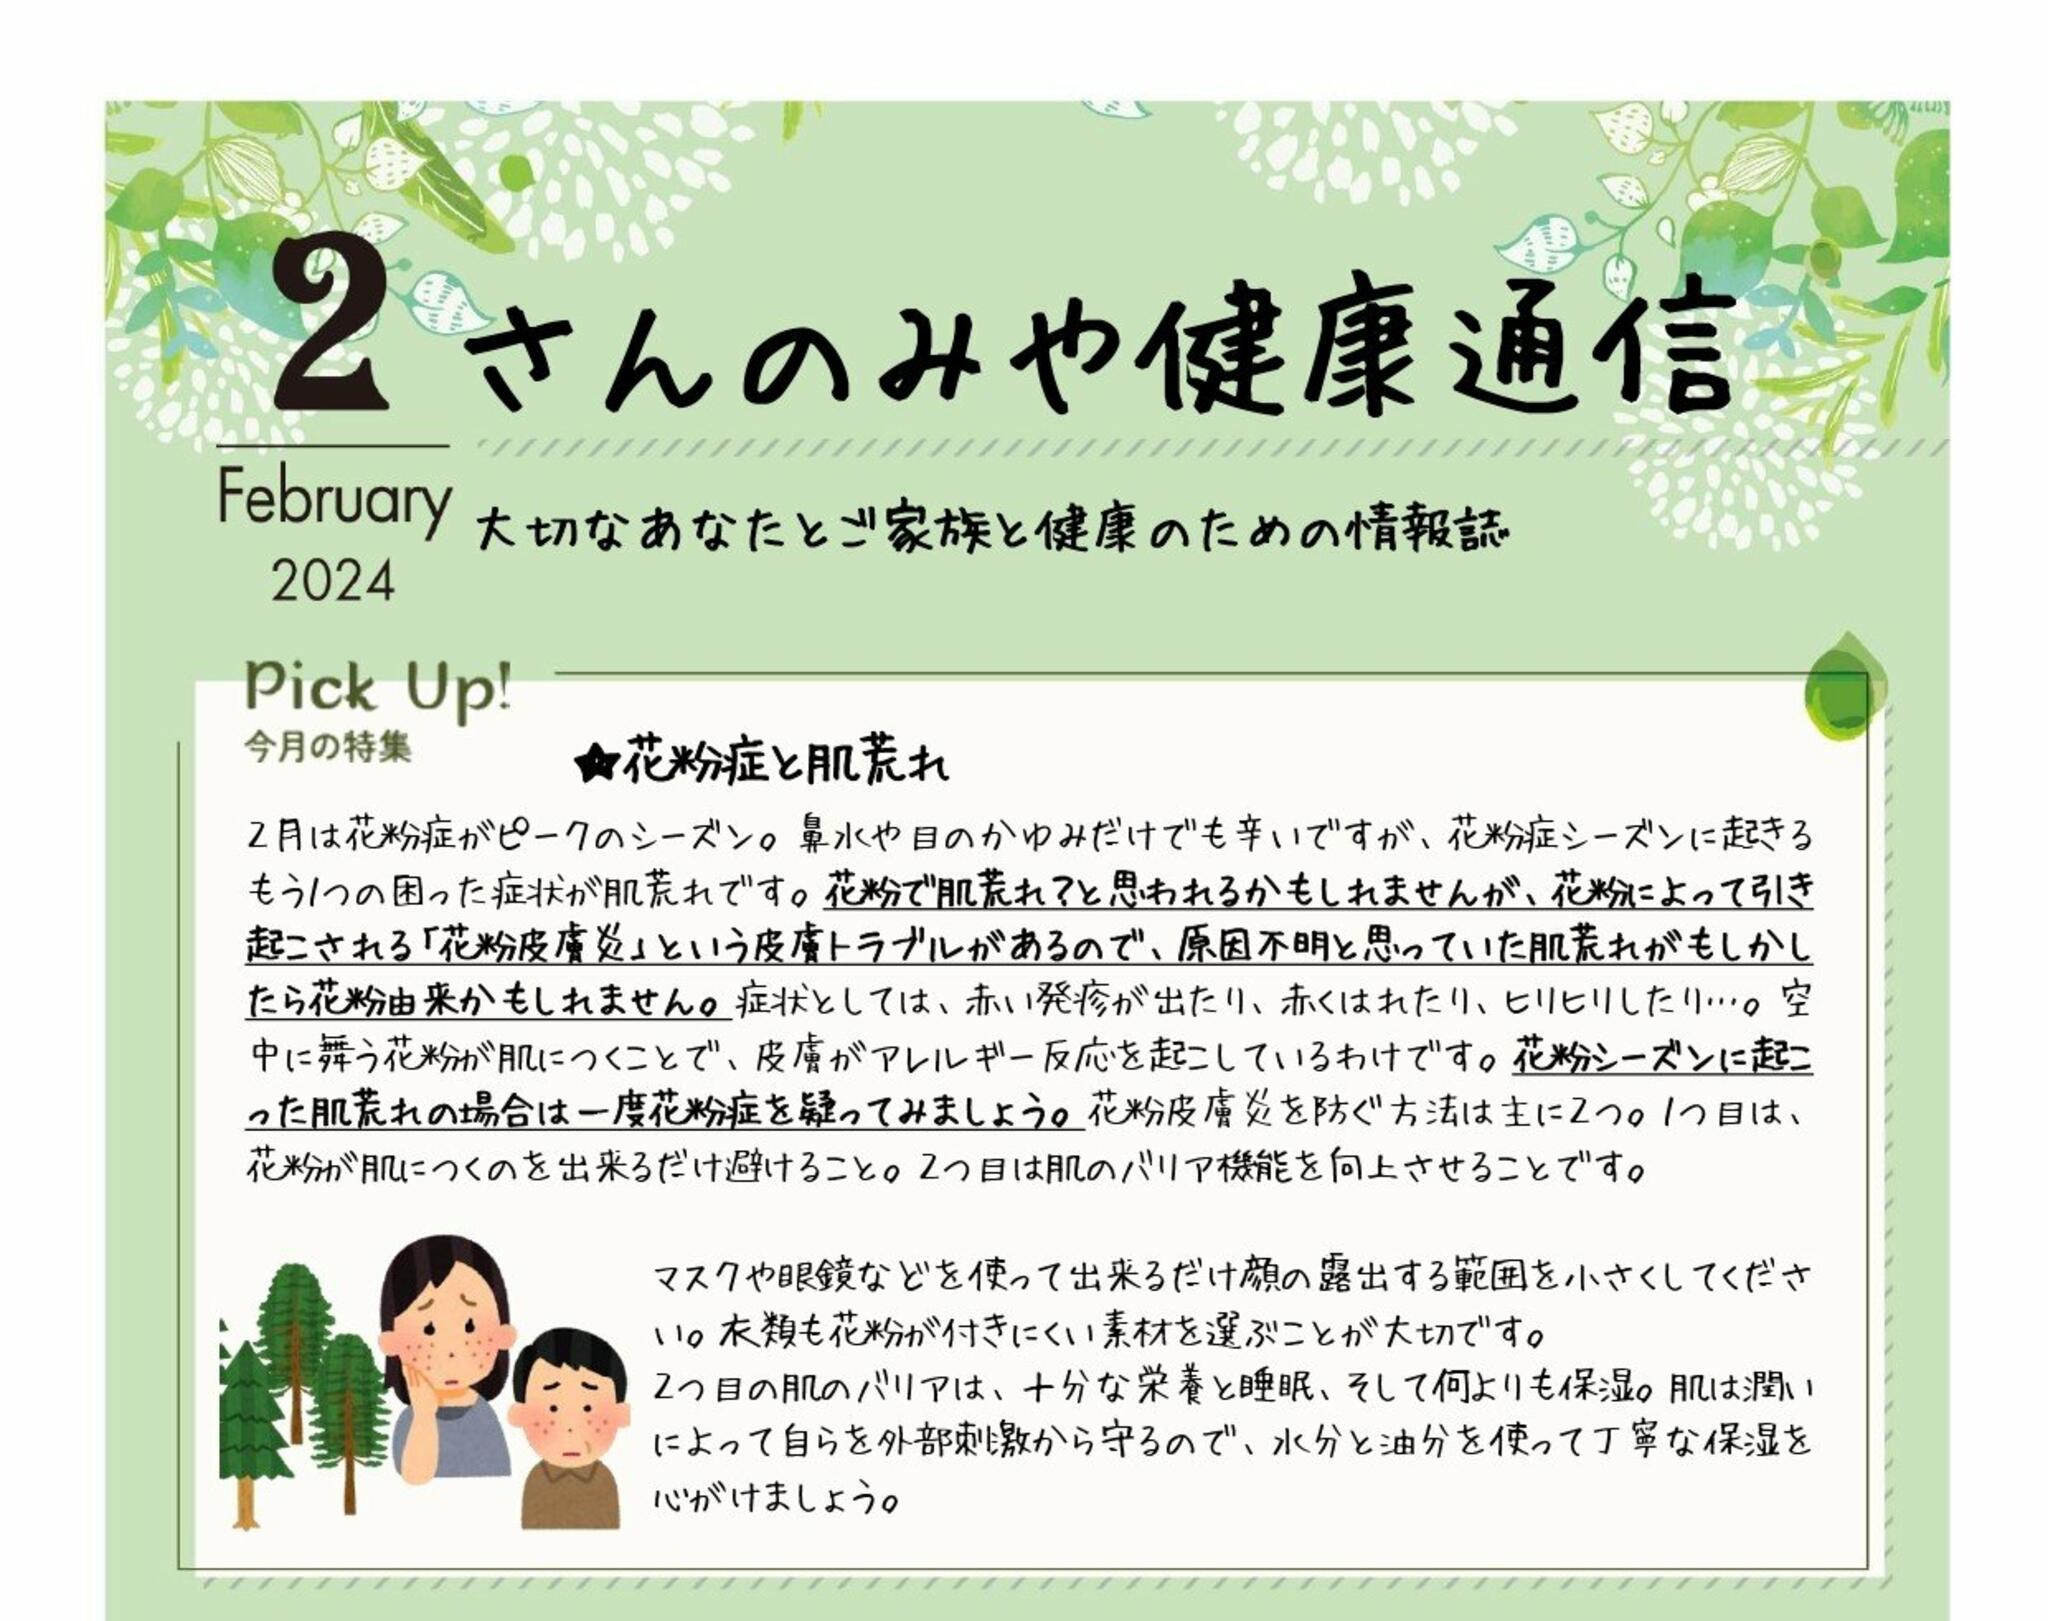 神戸三宮むつう整体院からのお知らせ(花粉症と肌荒れ)に関する写真